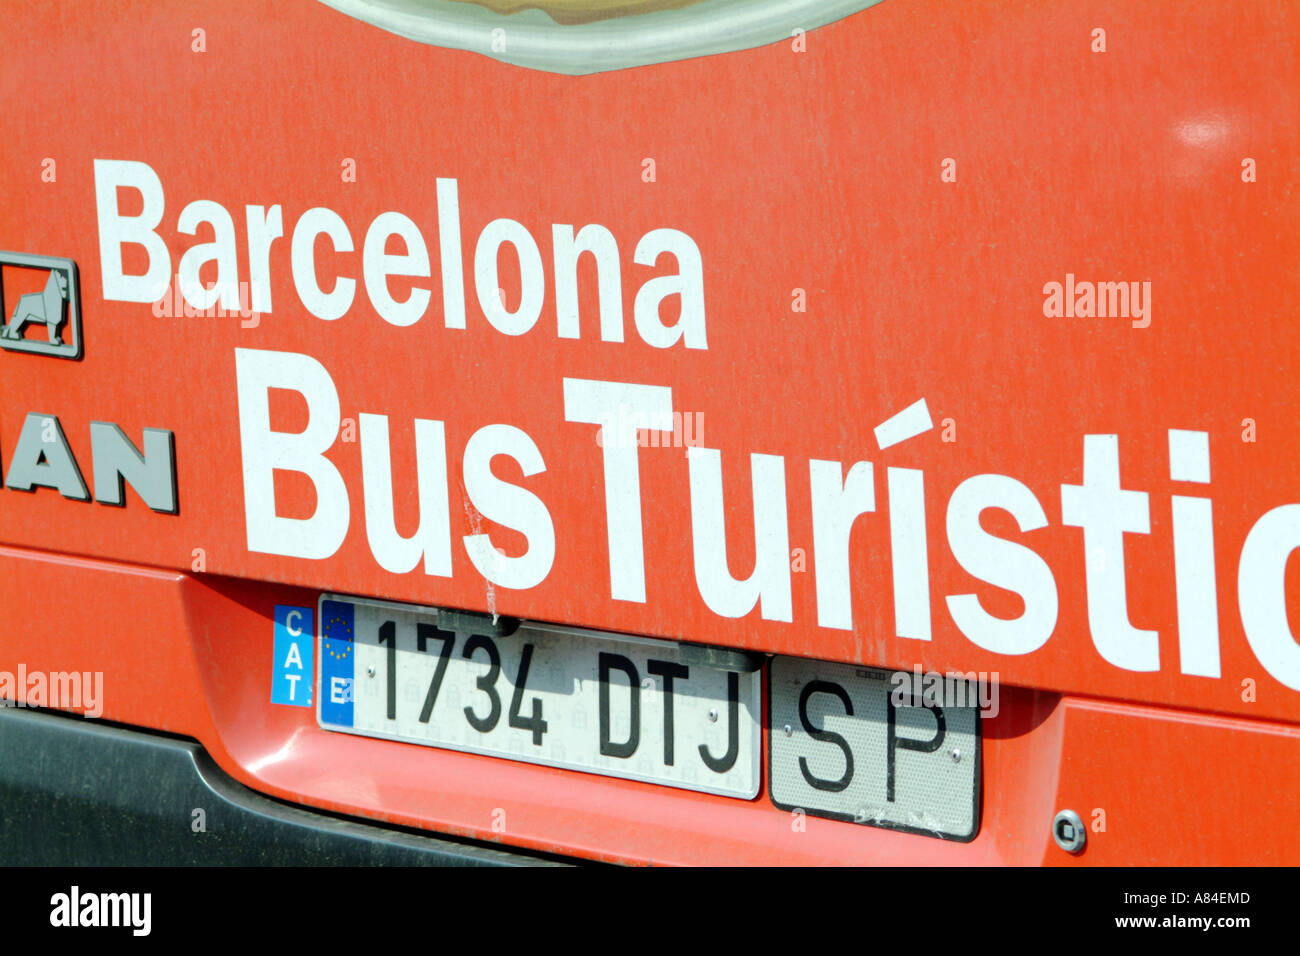 Red bus touristique Barcelone ville détail entraîneur espagnol espagne espana voyage tourisme cityscape bus touristique catalan véhicule objectif tran Banque D'Images